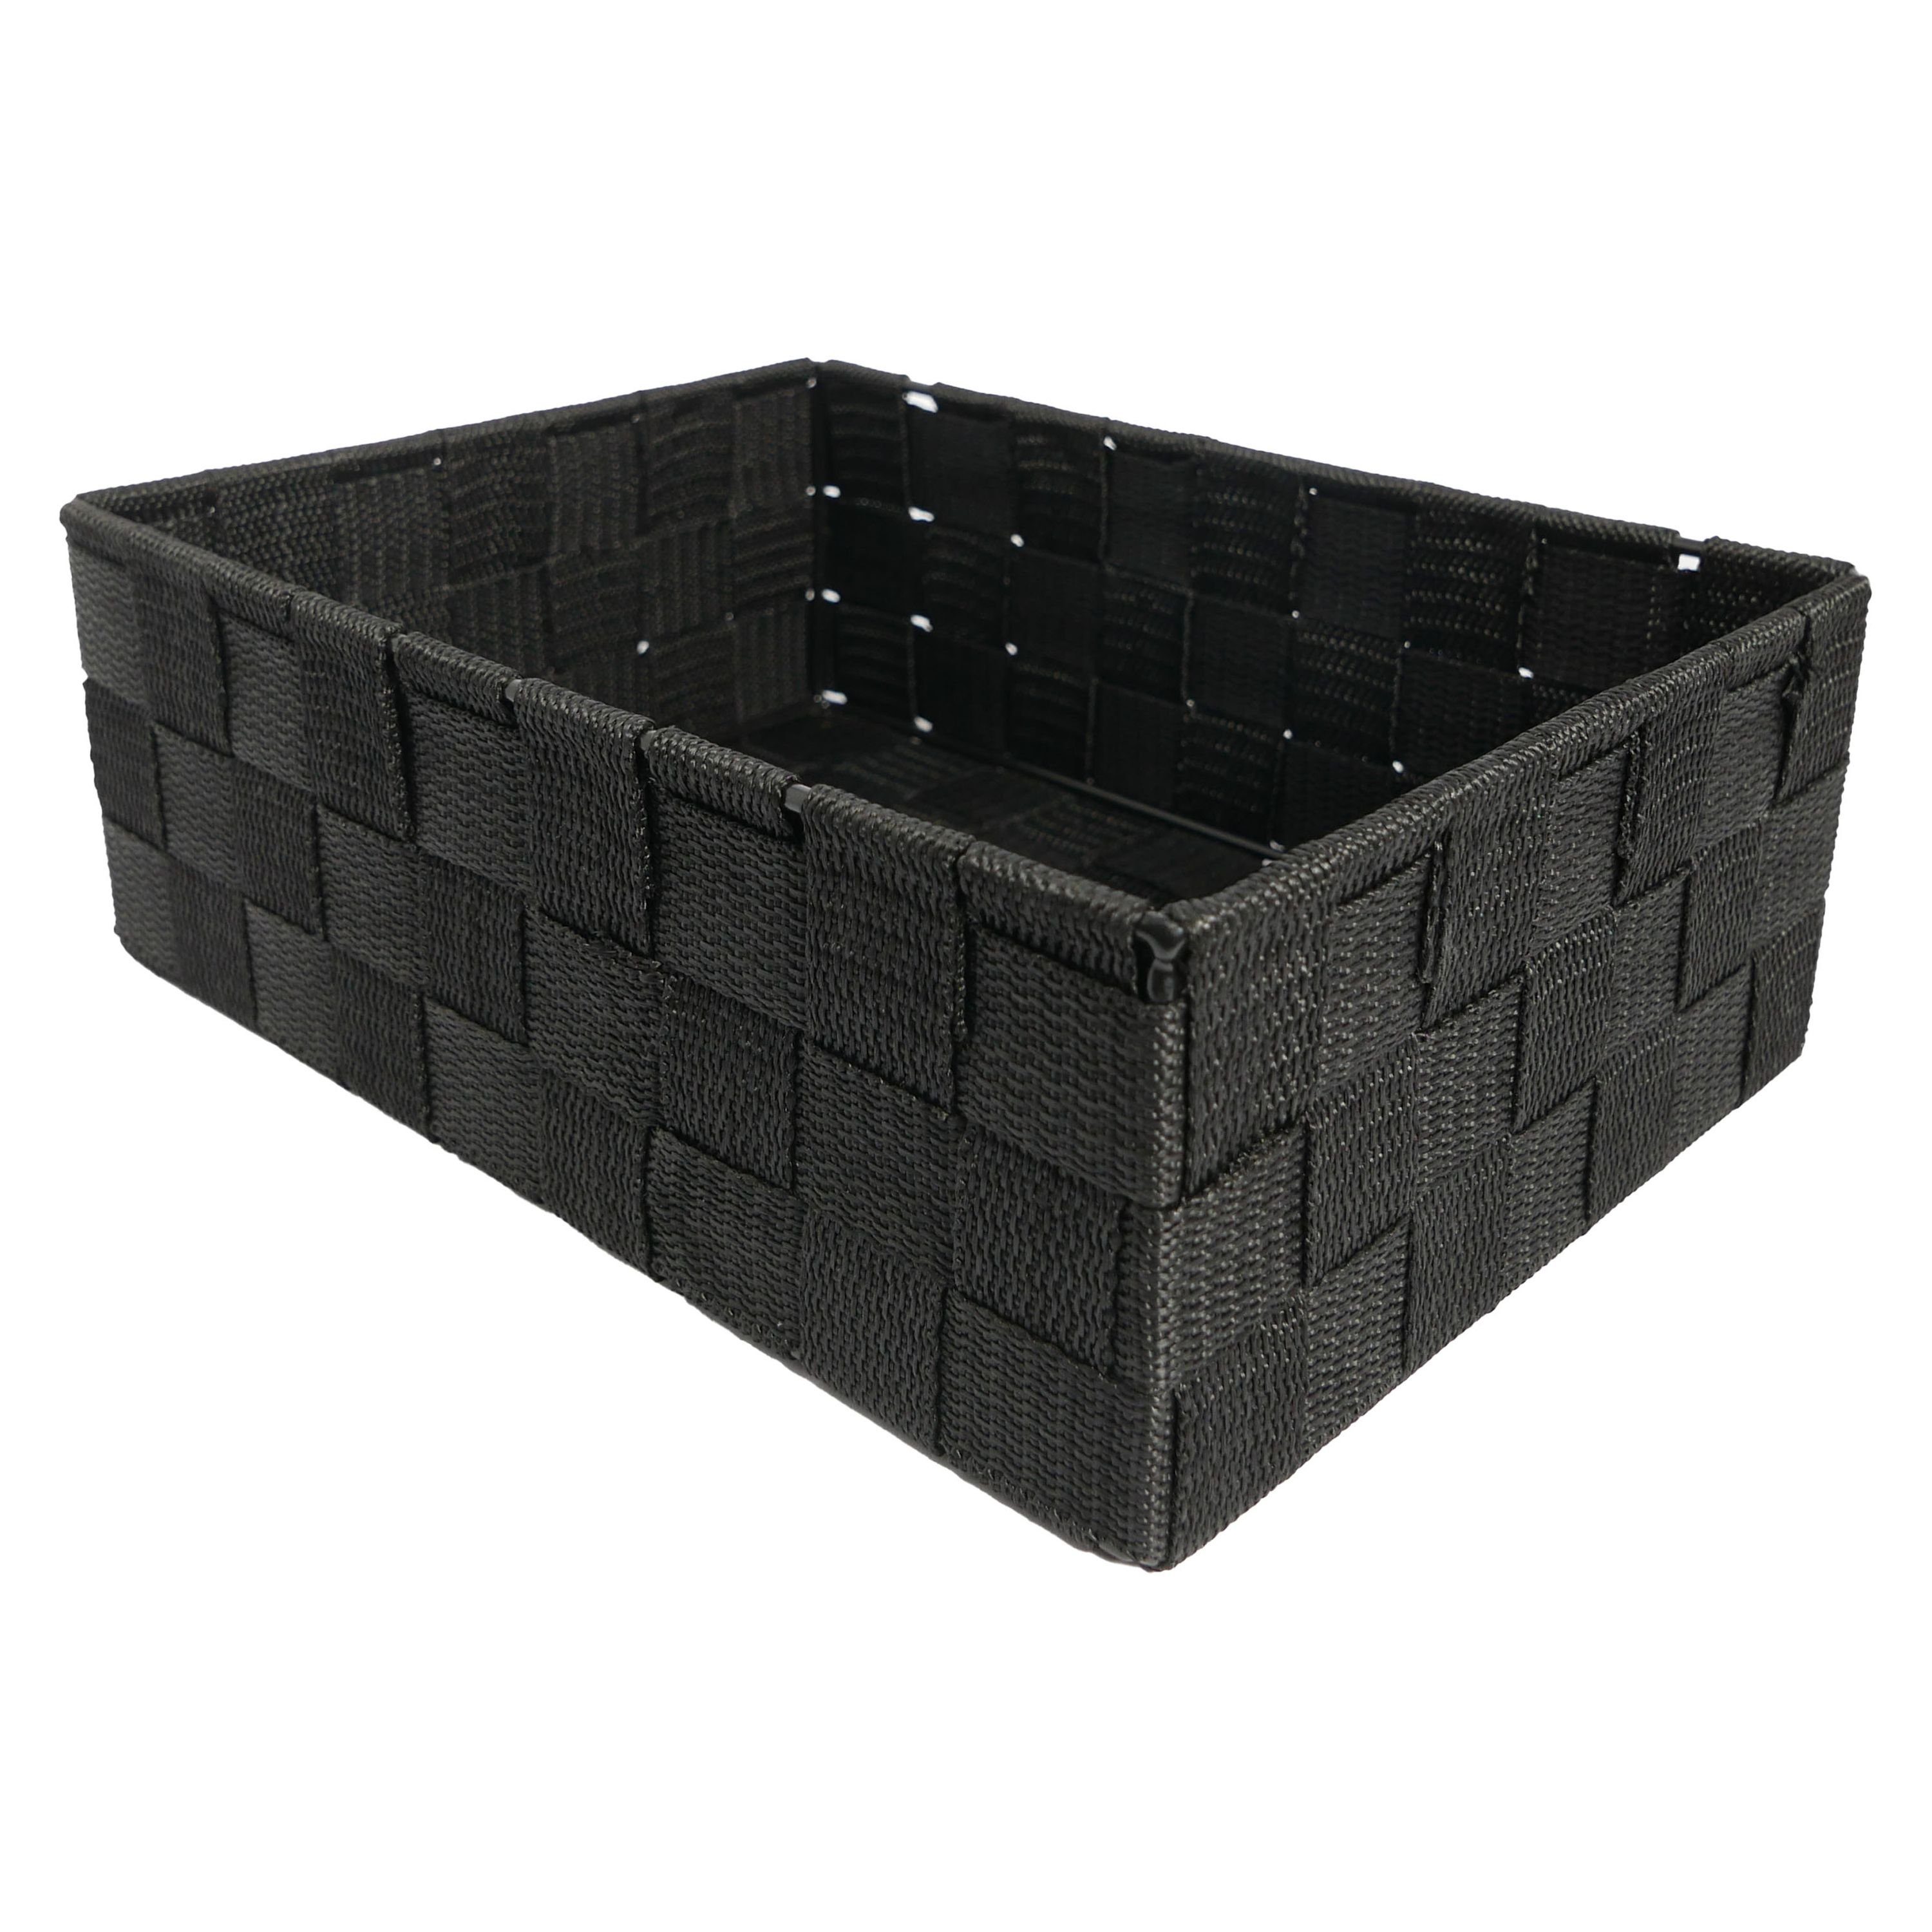 B&S Regalkorb Regalkorb Geflecht schwarz Ordnungsbox rechteckig 25 x 18 cm